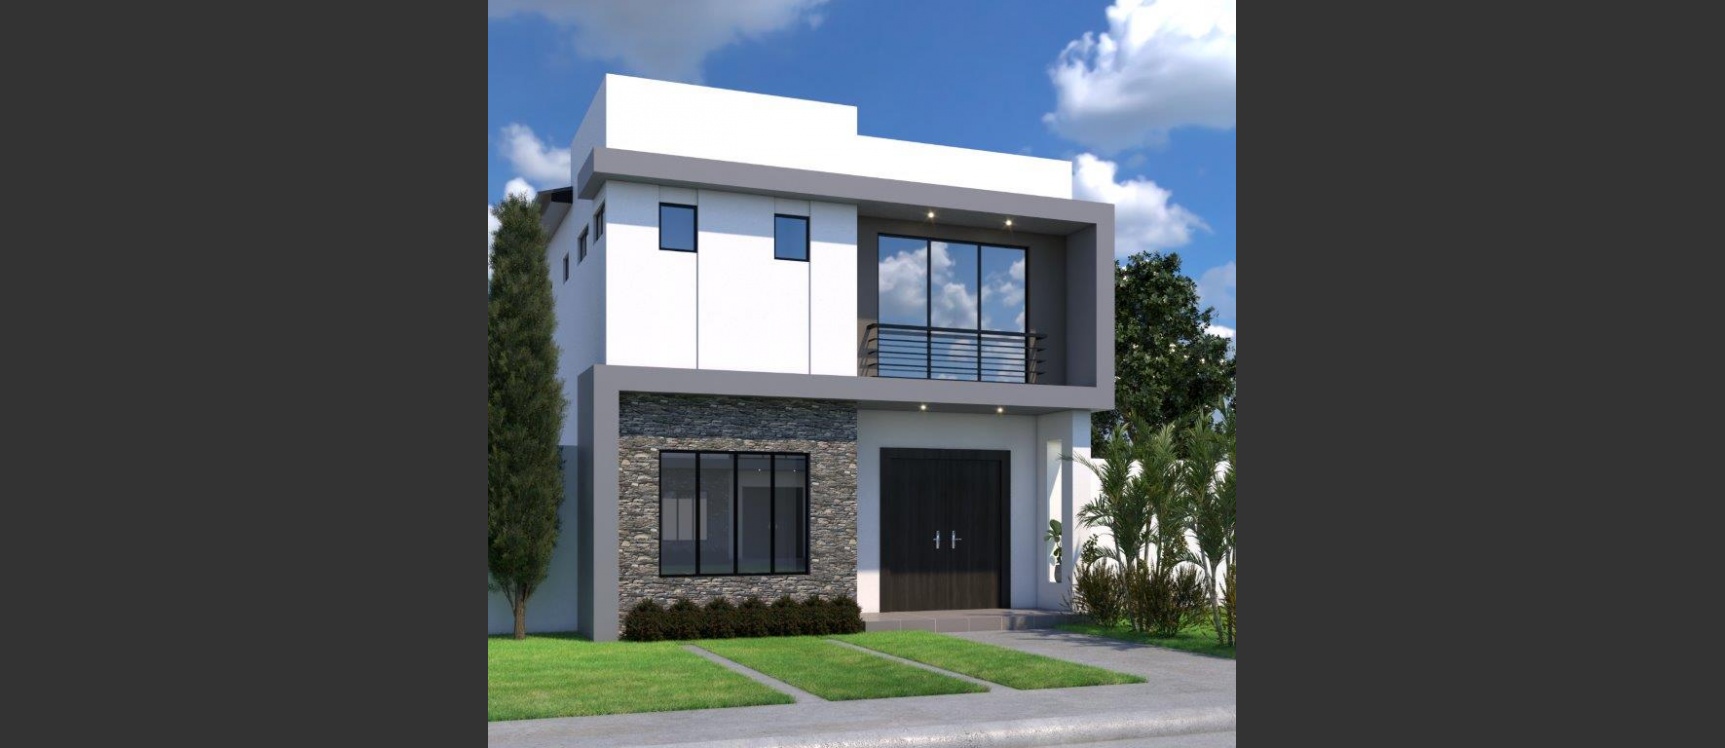 GeoBienes - Casa en venta en Isla Celeste Etapa Babor (Modelo C) - Plusvalia Guayaquil Casas de venta y alquiler Inmobiliaria Ecuador